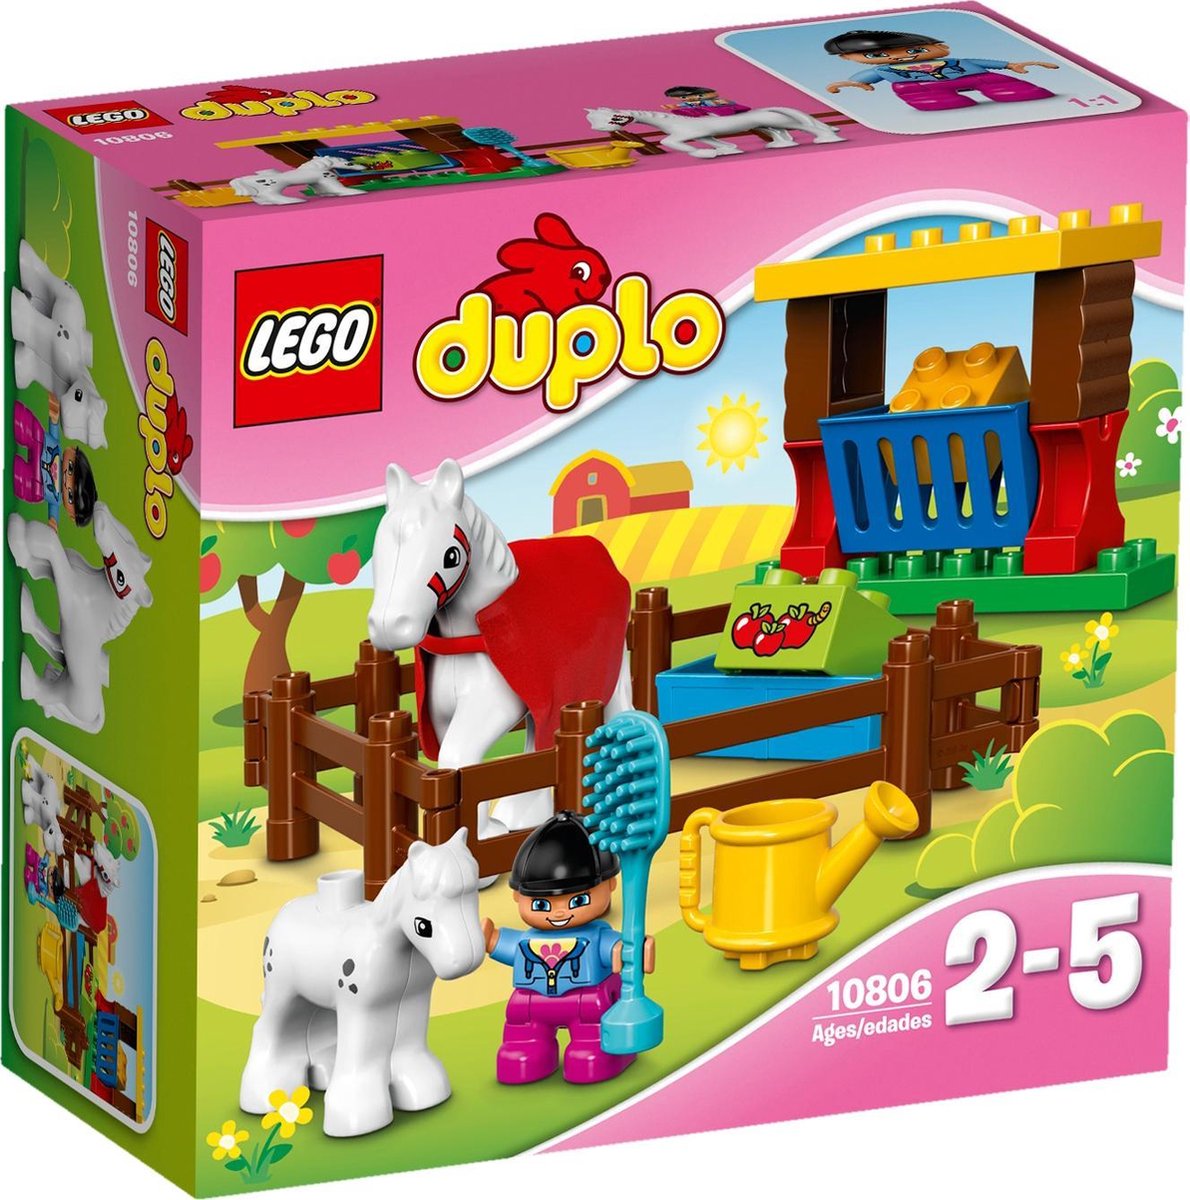 LEGO DUPLO Paarden - 10806 | bol.com